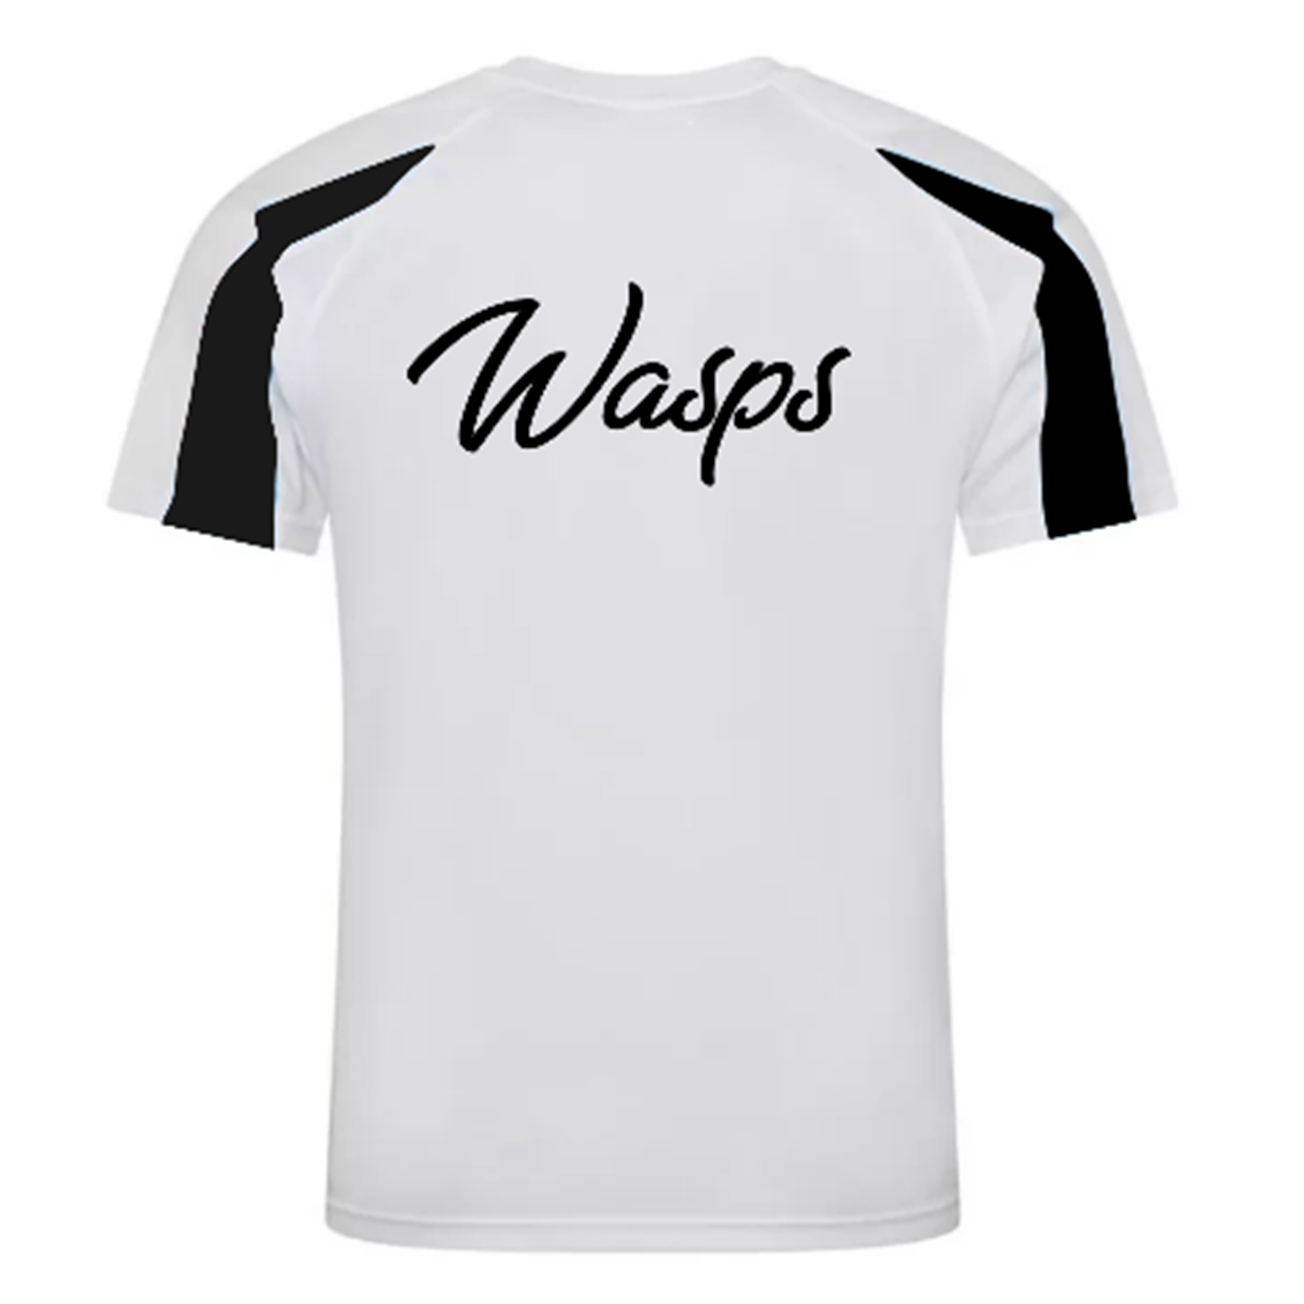 Wordsley Wasps - Hornets Training Shirt